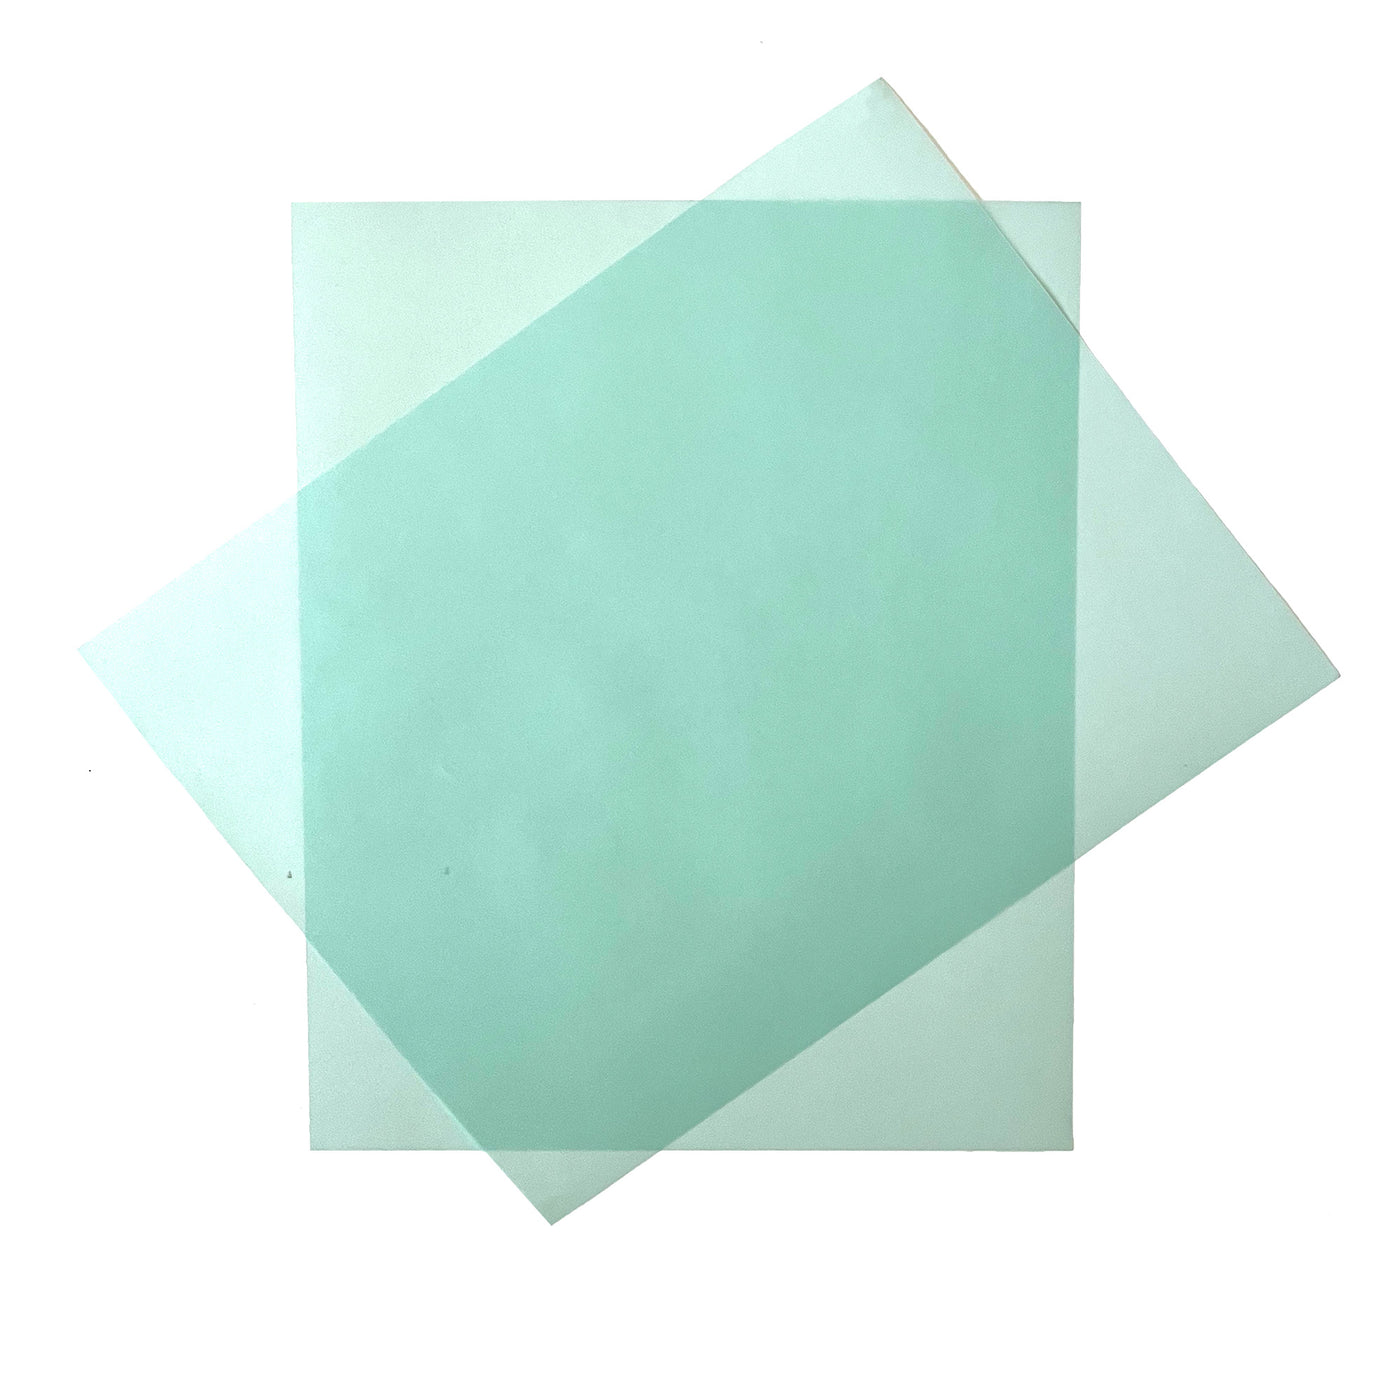 SEAGLASS BLUE Translucent Vellum - 8½ x 11 - Encore